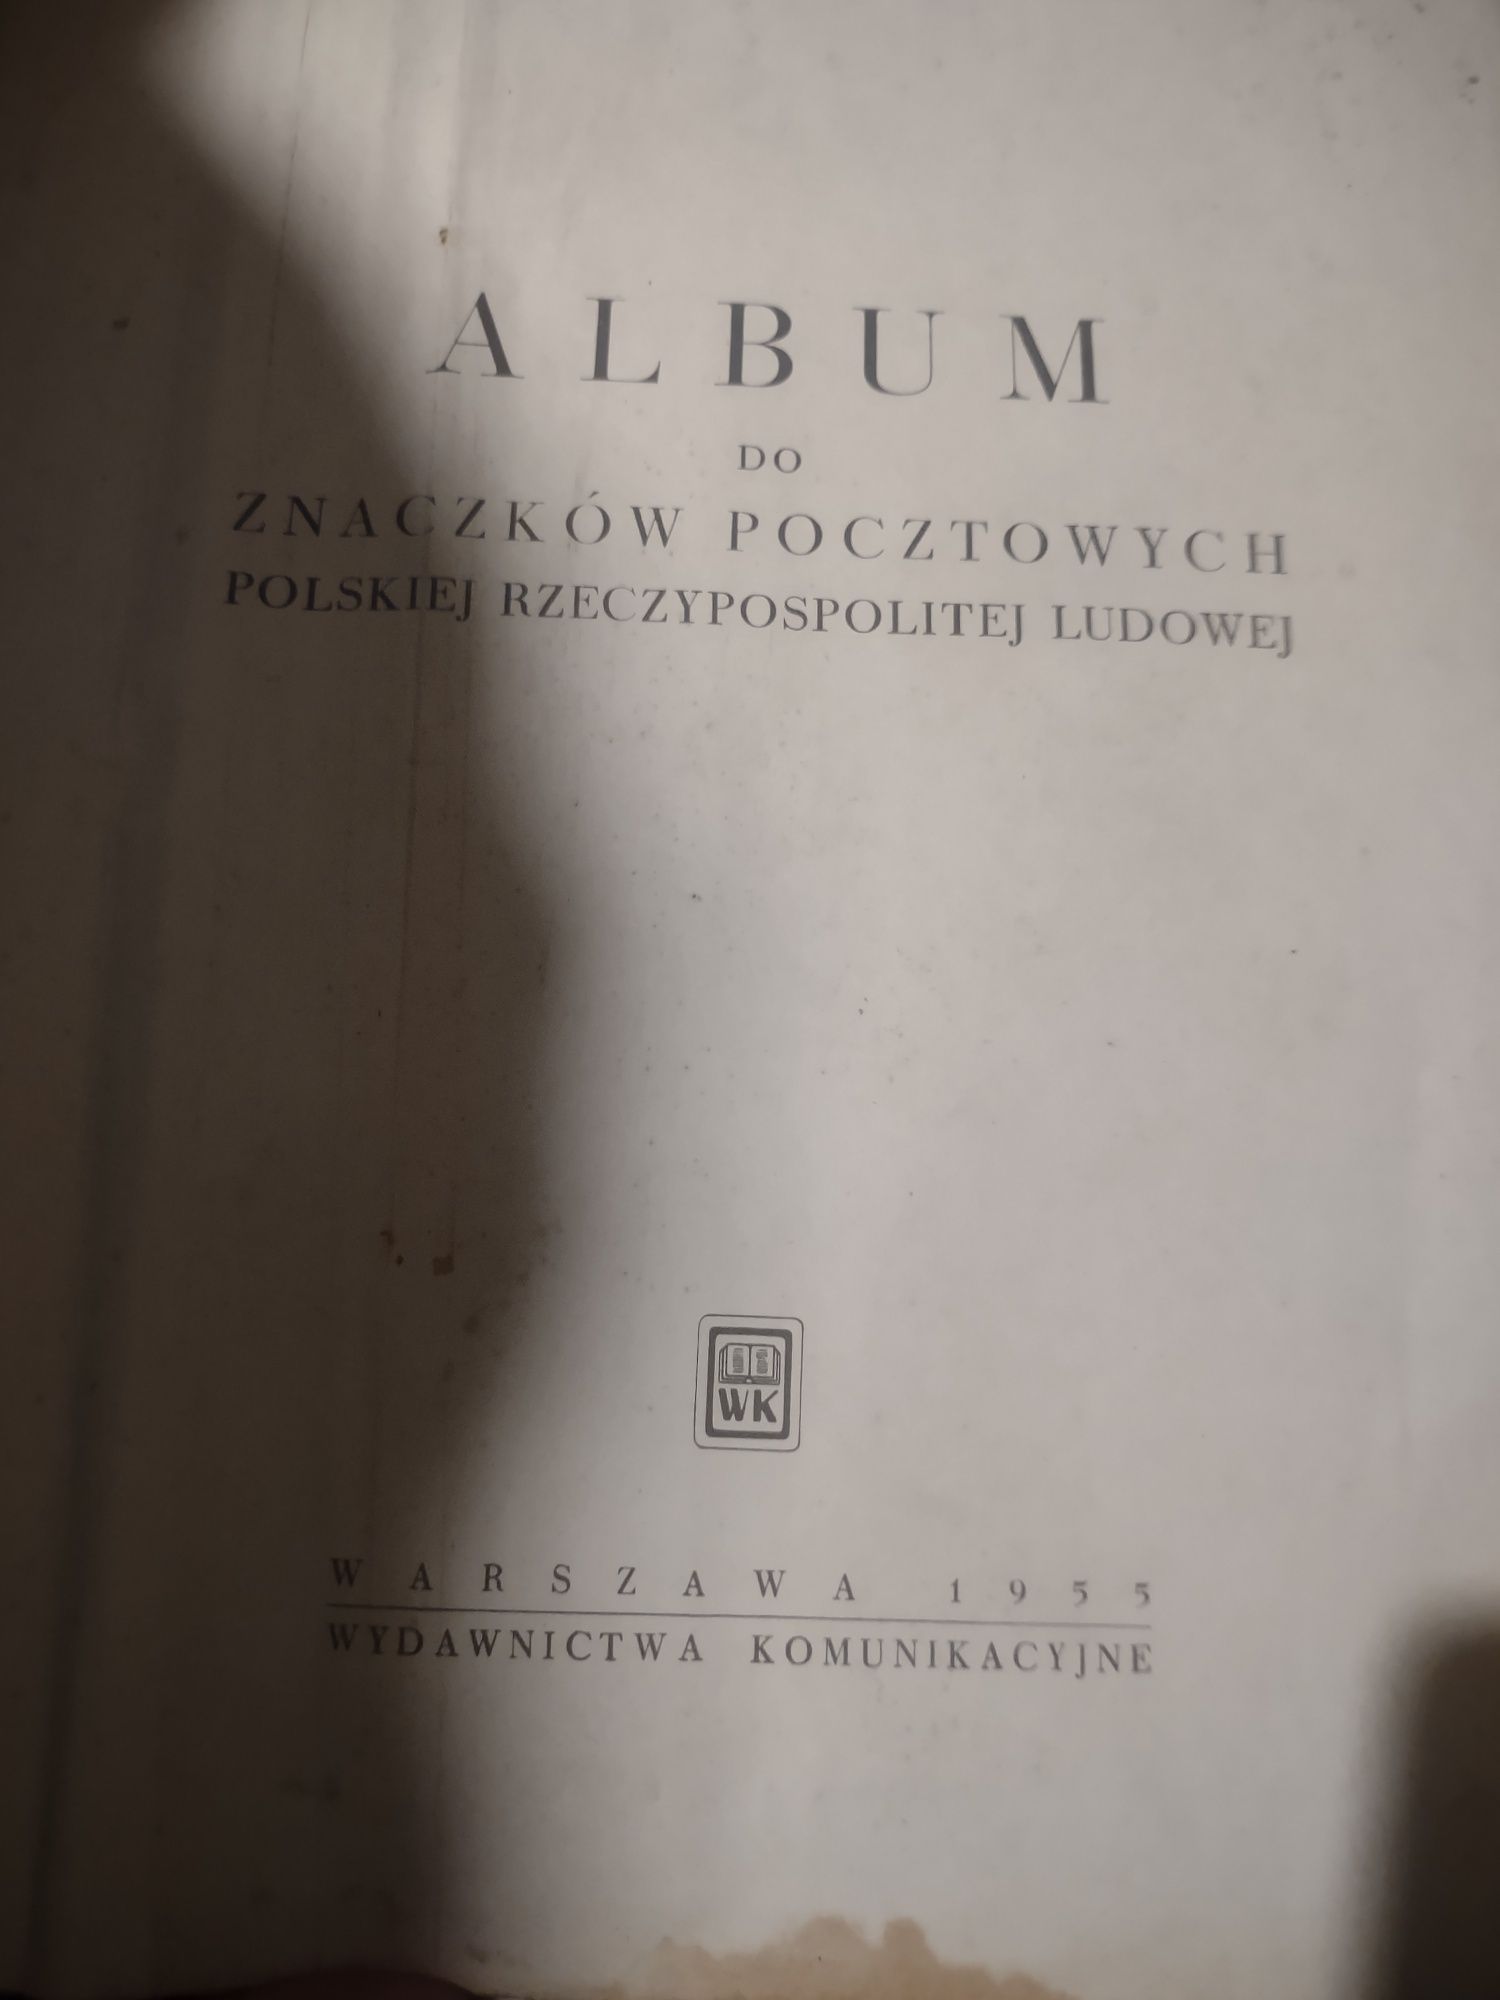 Album znaczków pocztowych Polskiej Rzeczypospolitej Warszawa 1955